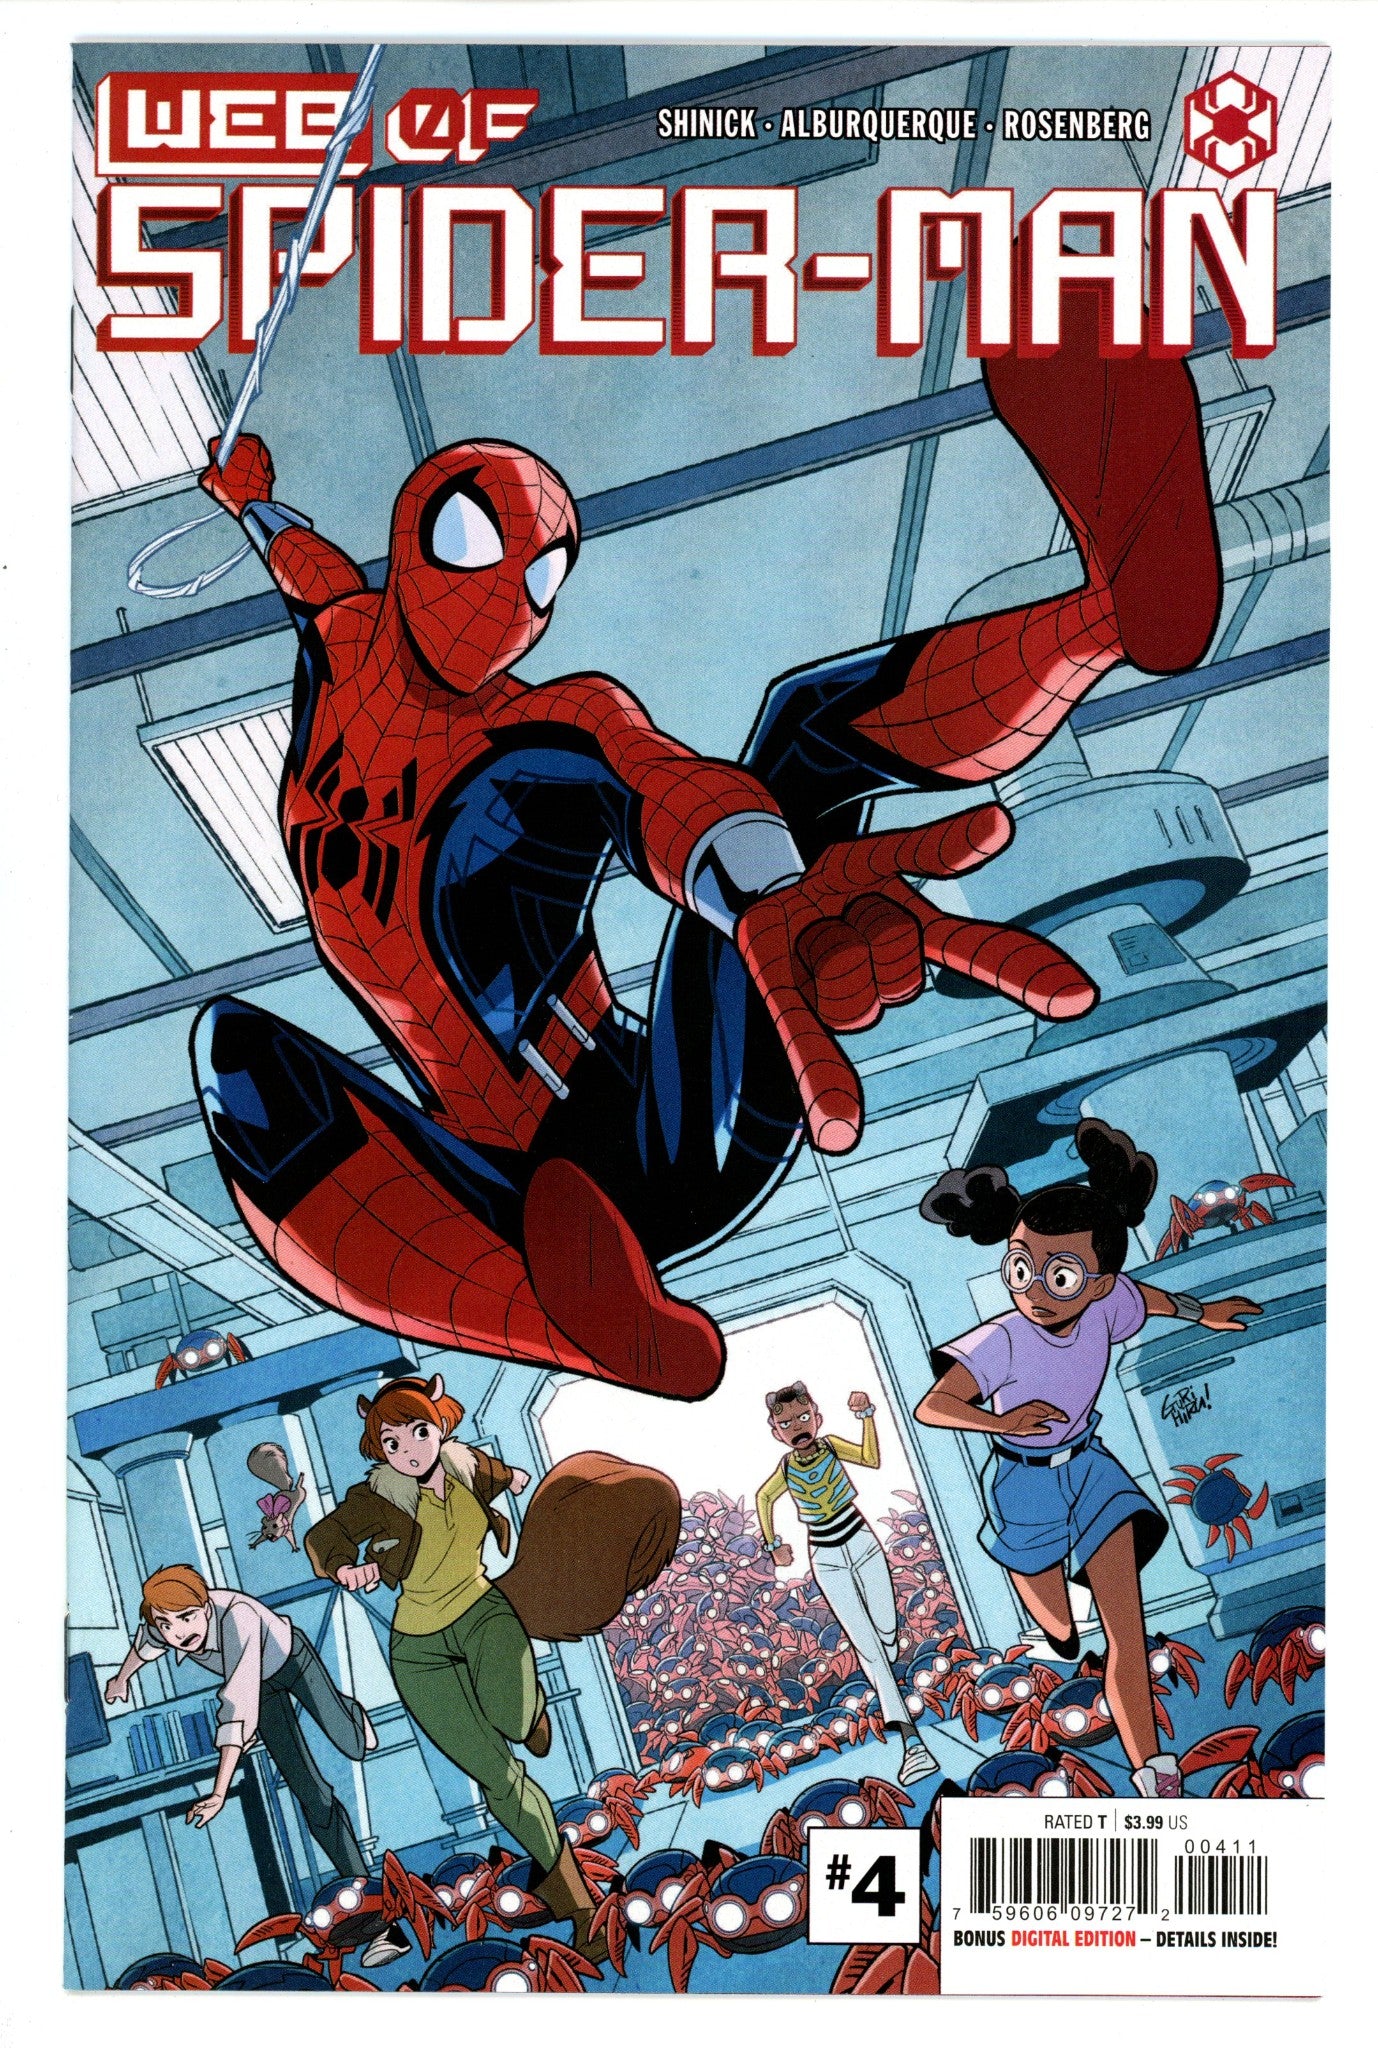 W.E.B. of Spider-Man Vol 3 4 High Grade (2021) 